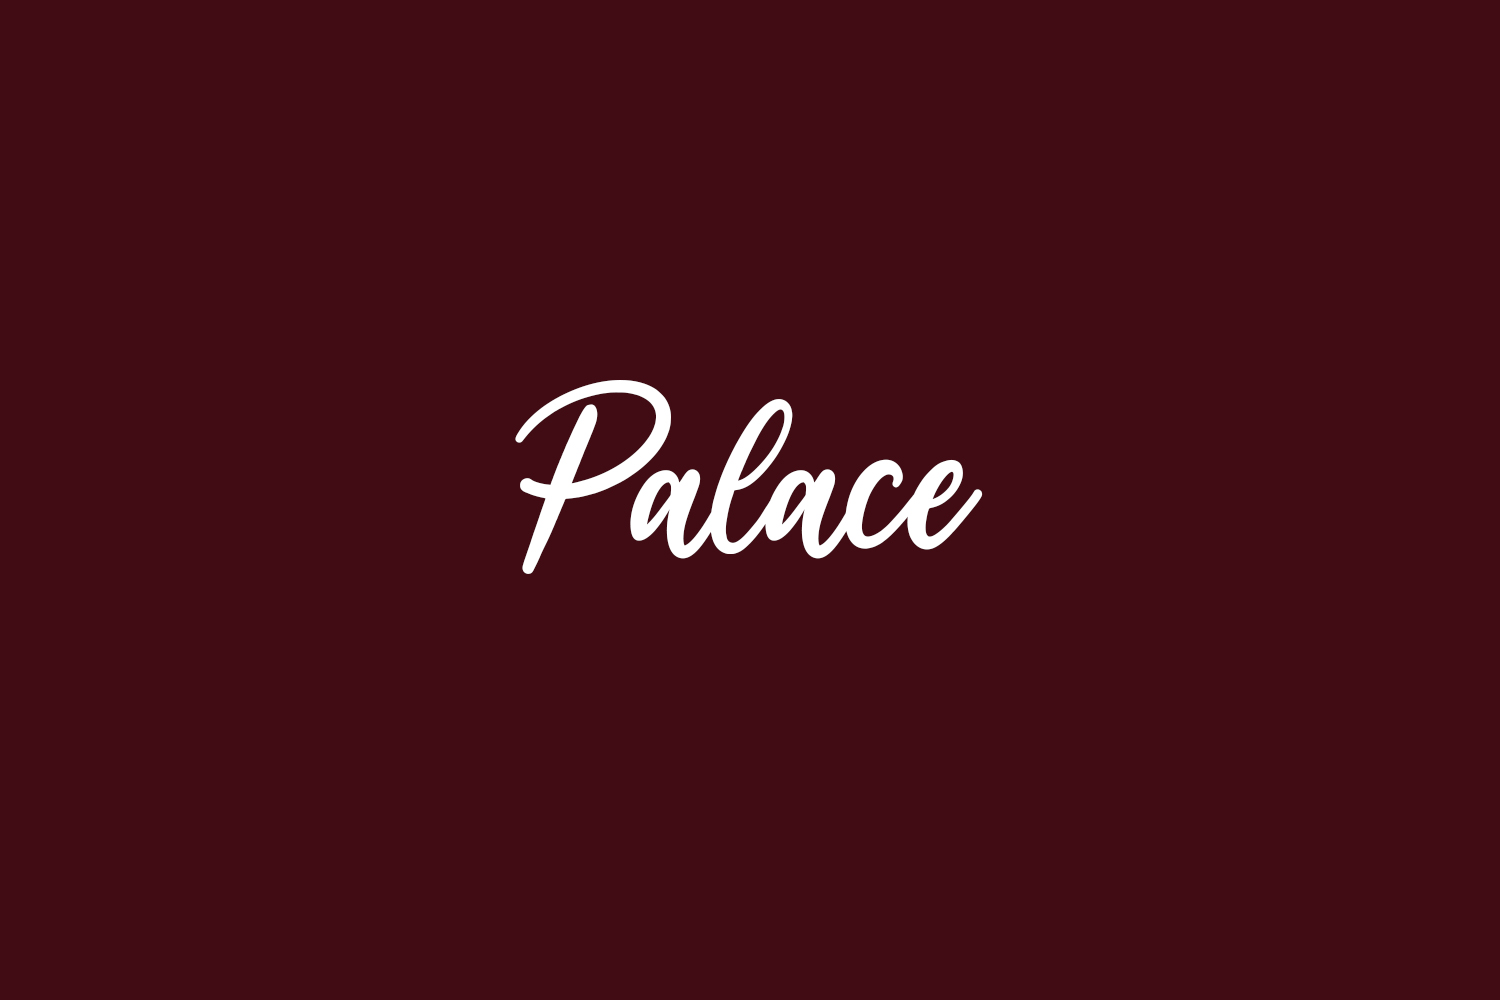 Palace Free Font